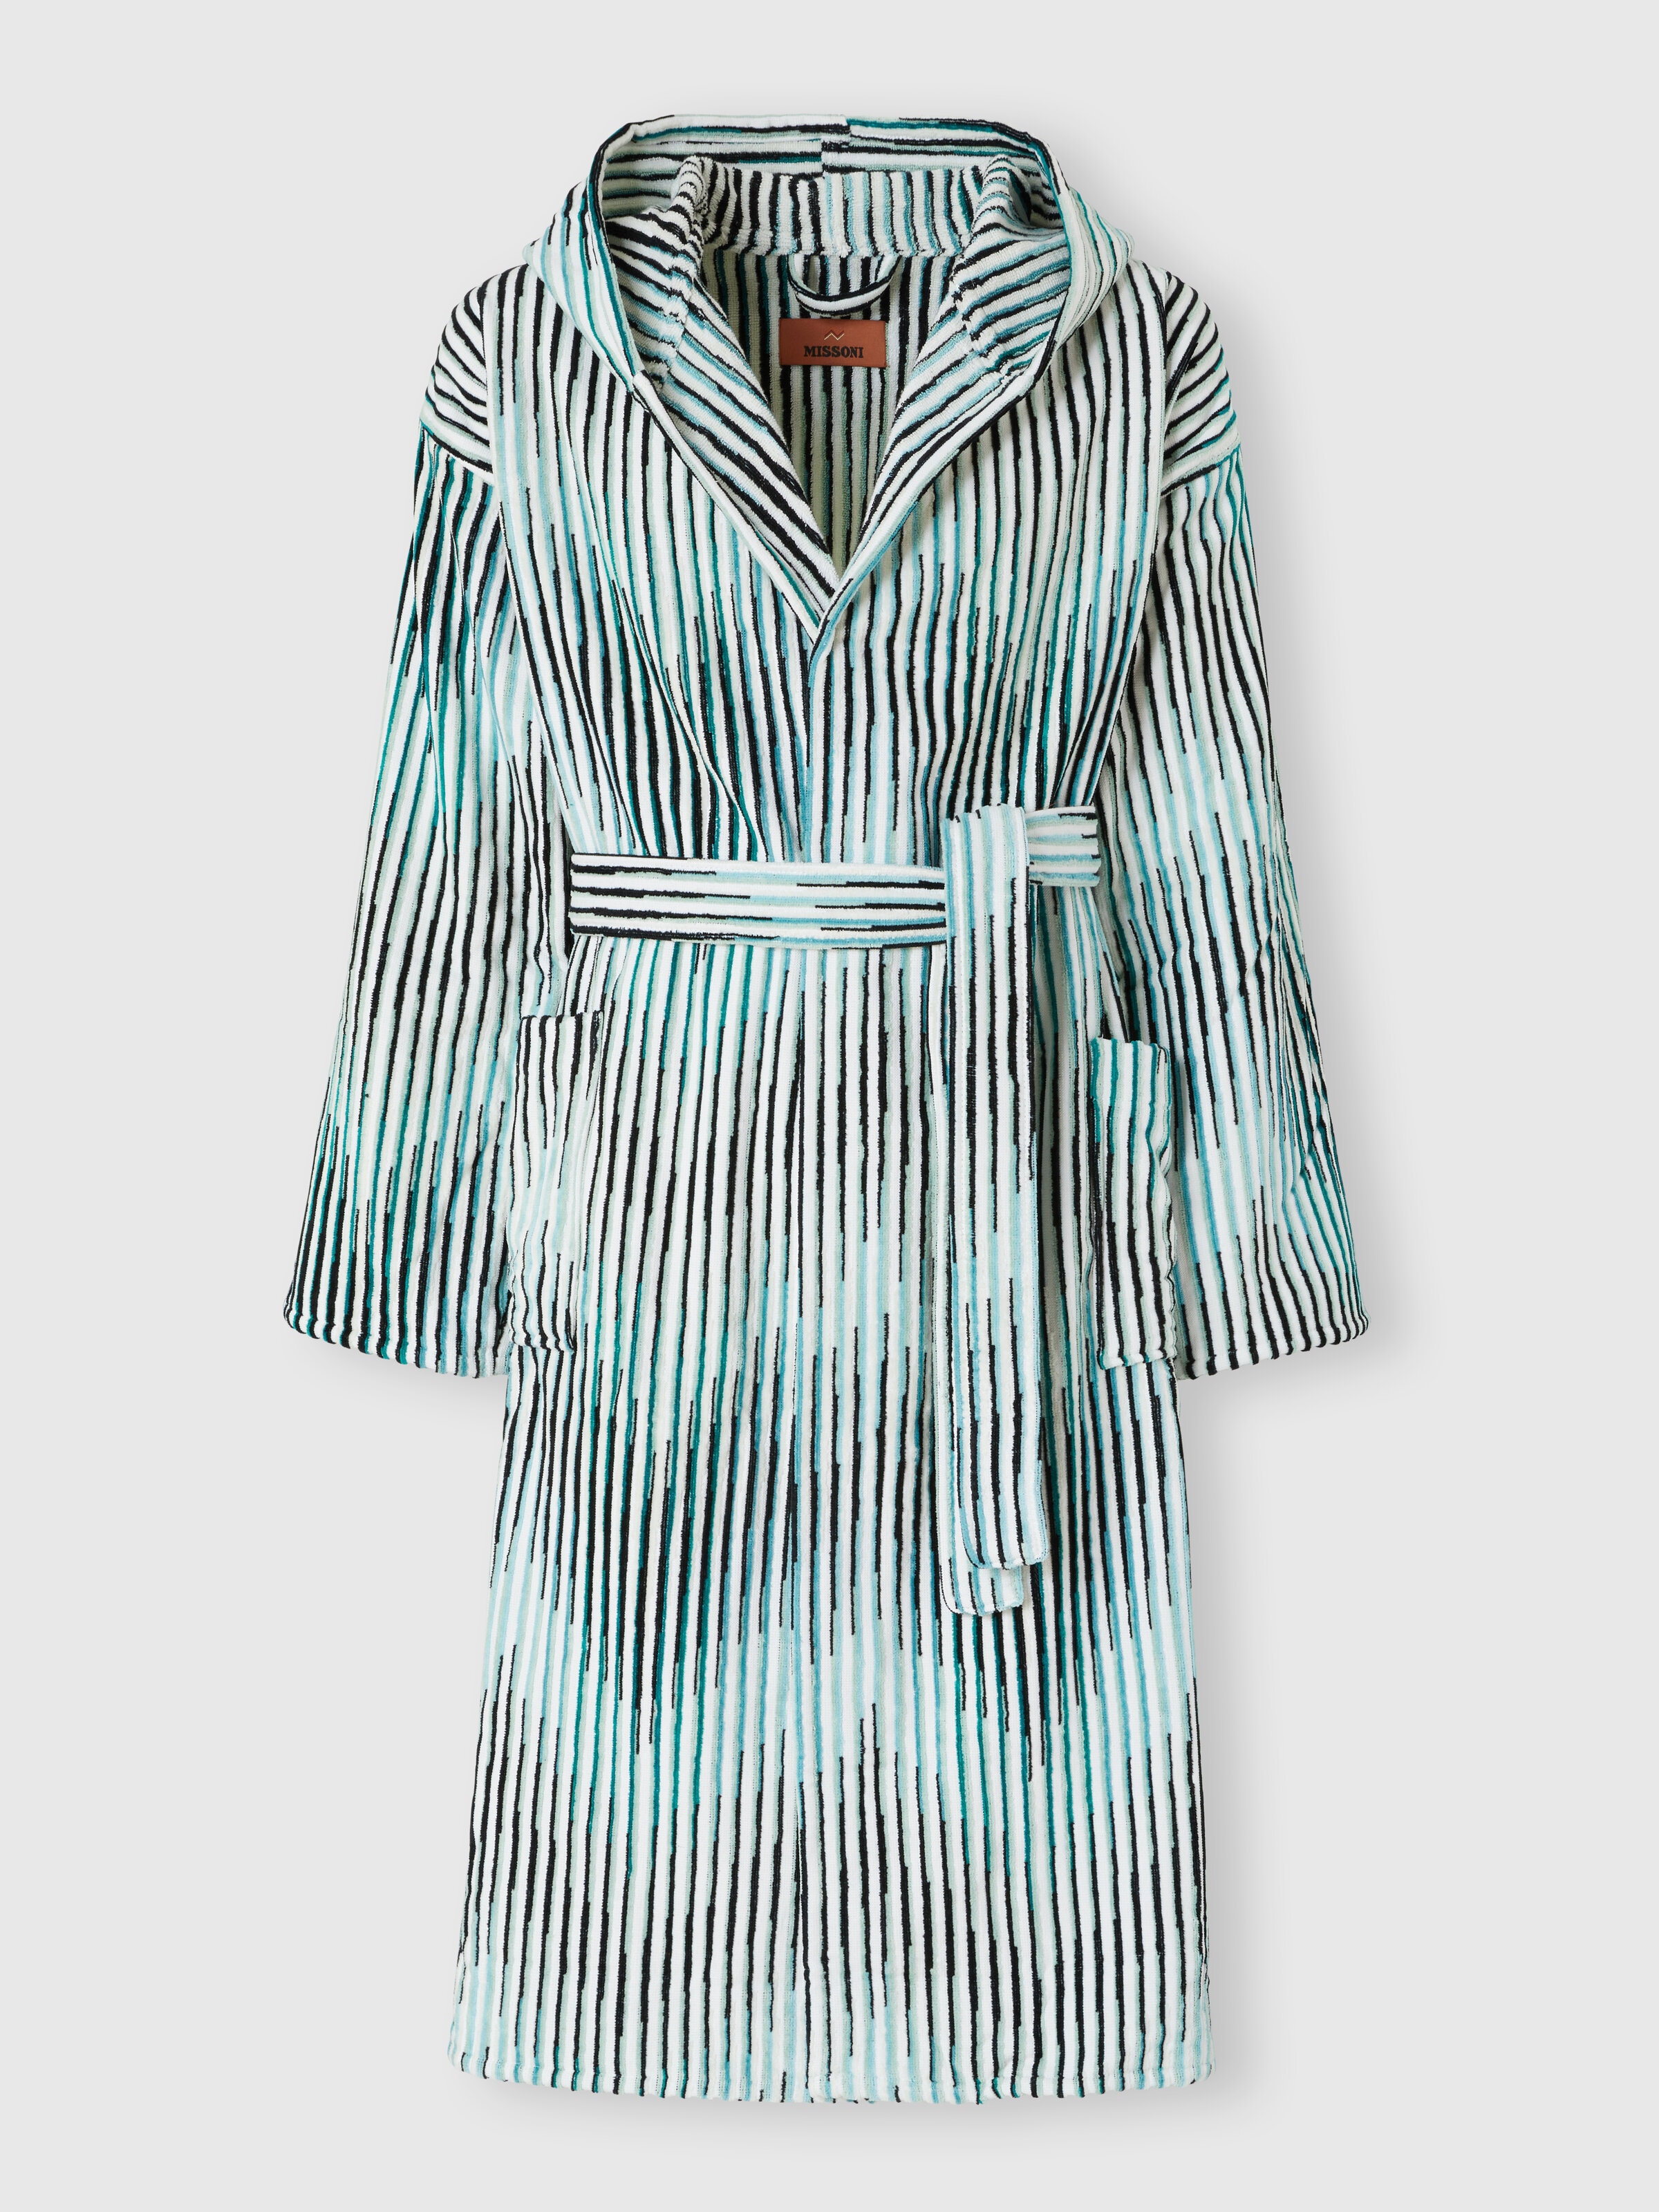 Arpeggio bathrobe in slub cotton terry, Turquoise  - 0